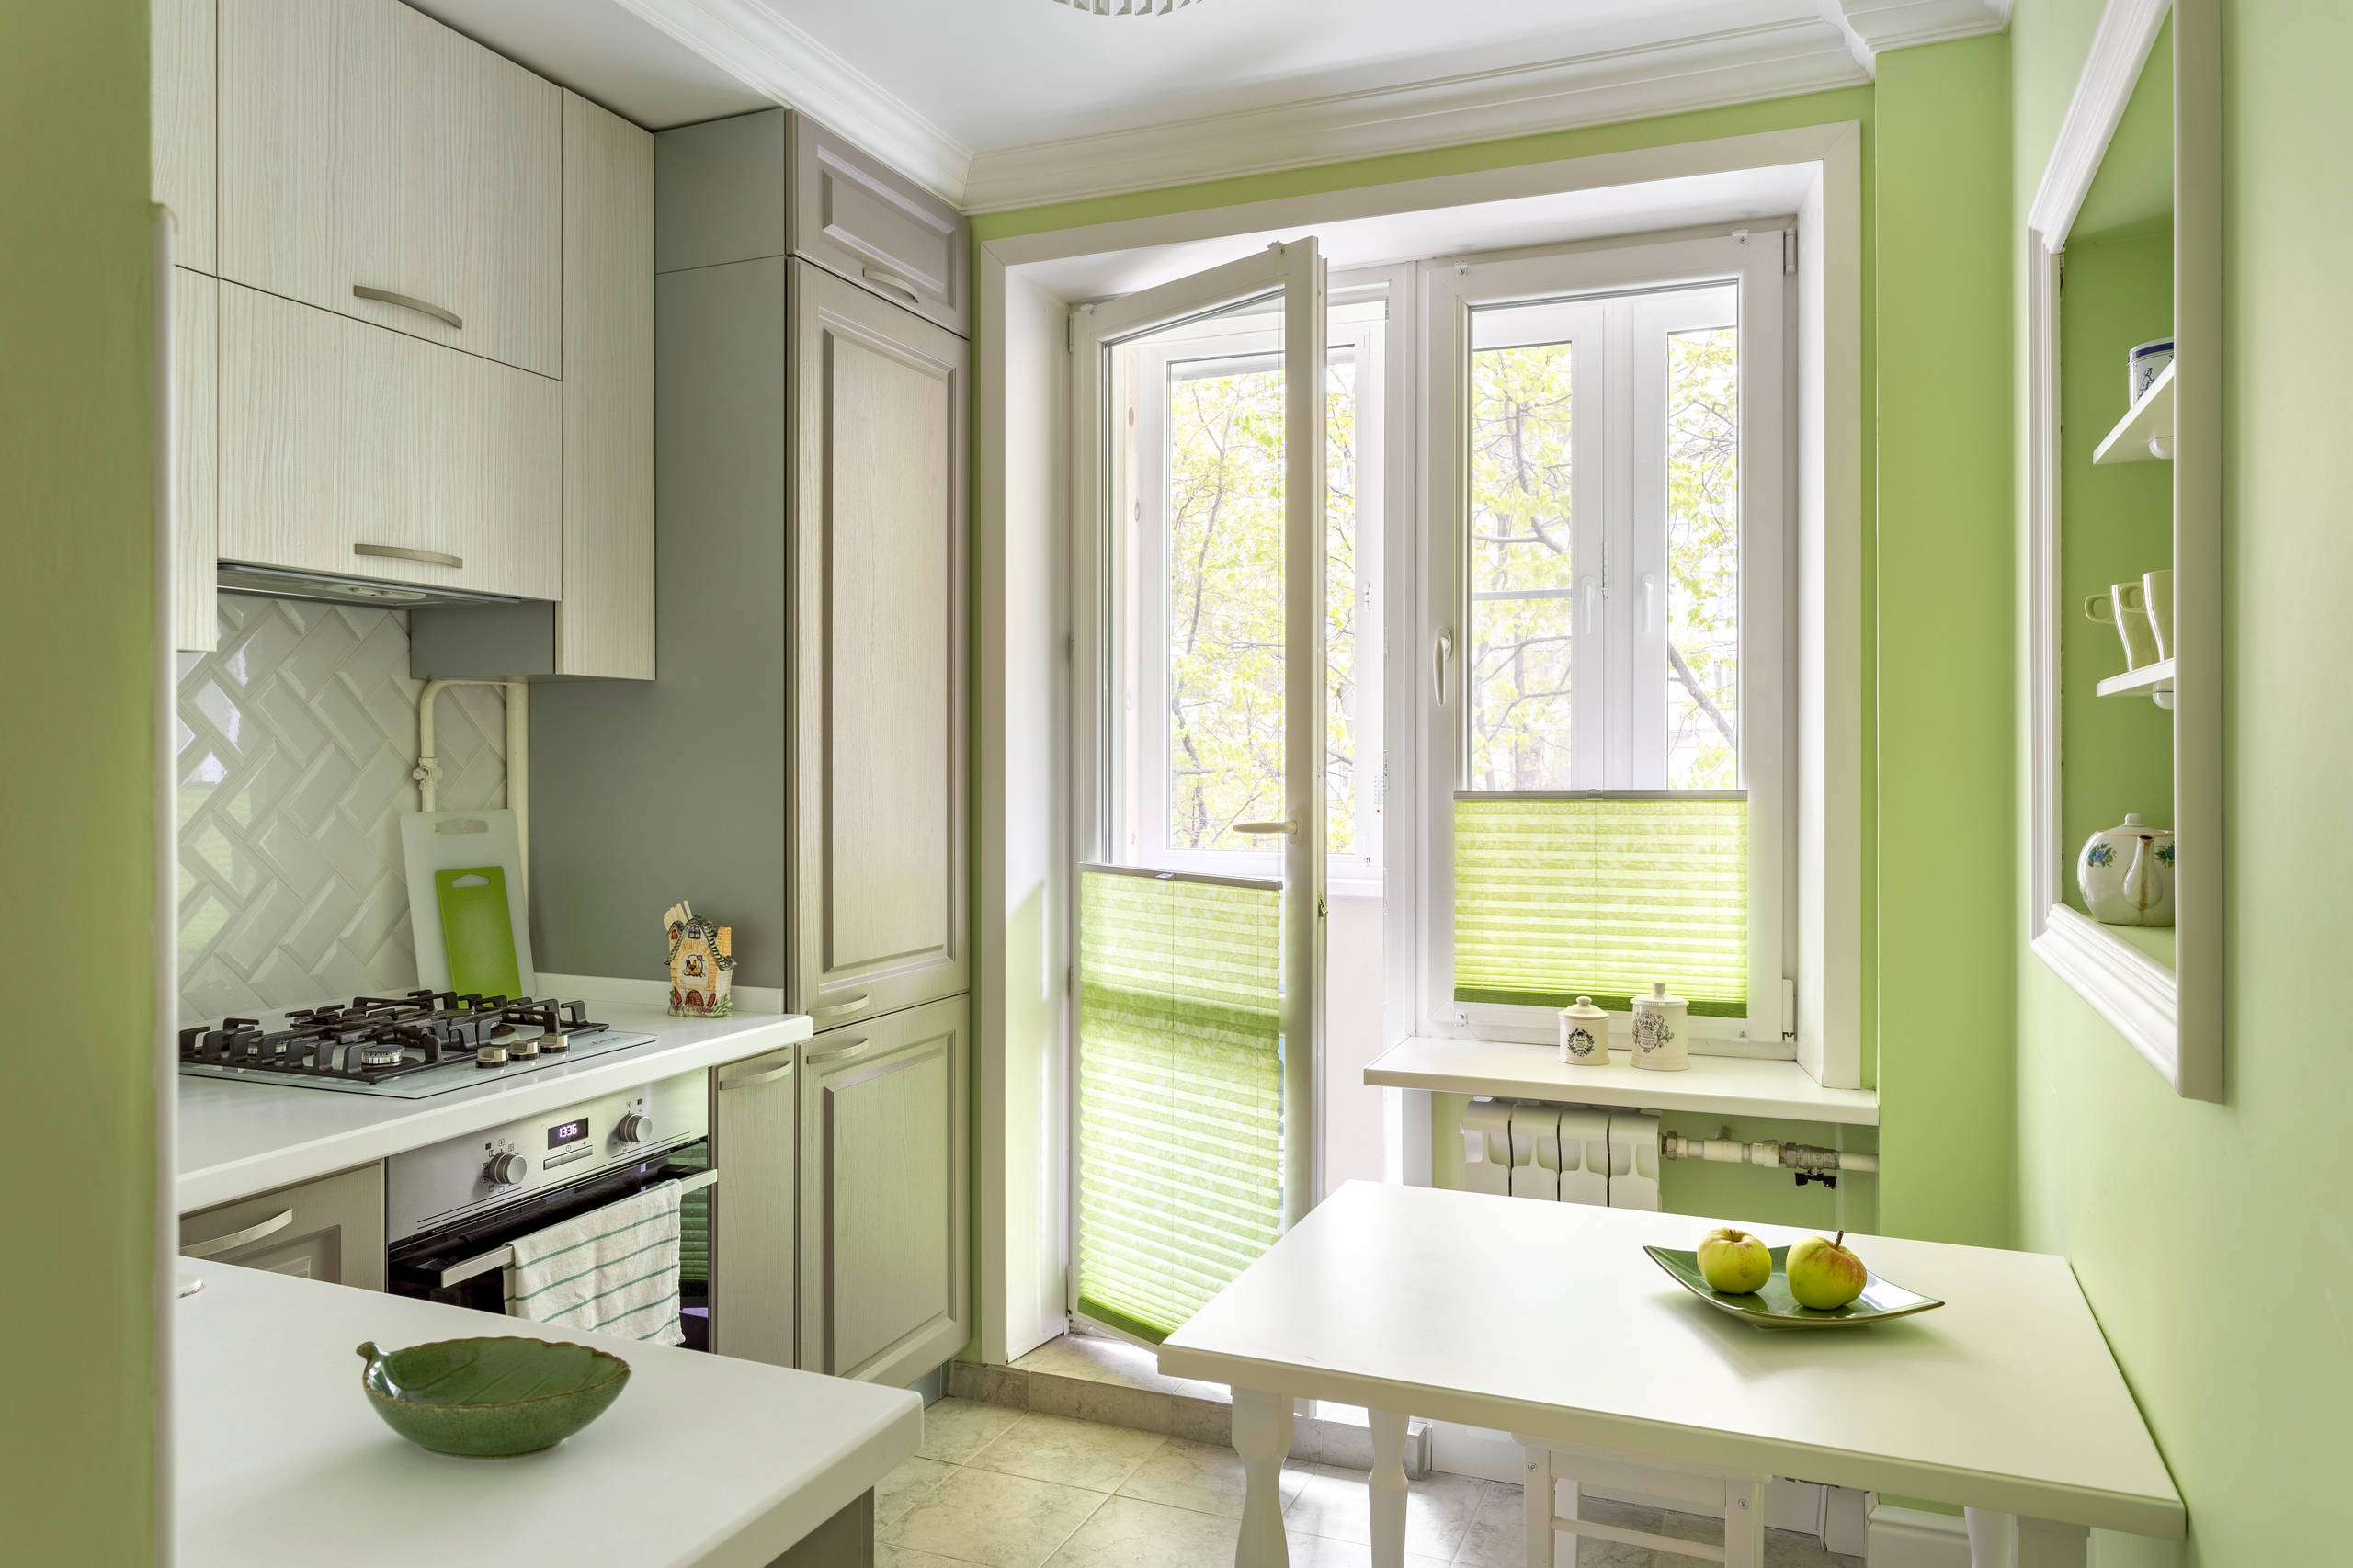 Дизайн интерьера кухни: 70 готовых решений для ремонта квартиры г. Санкт-Петербург